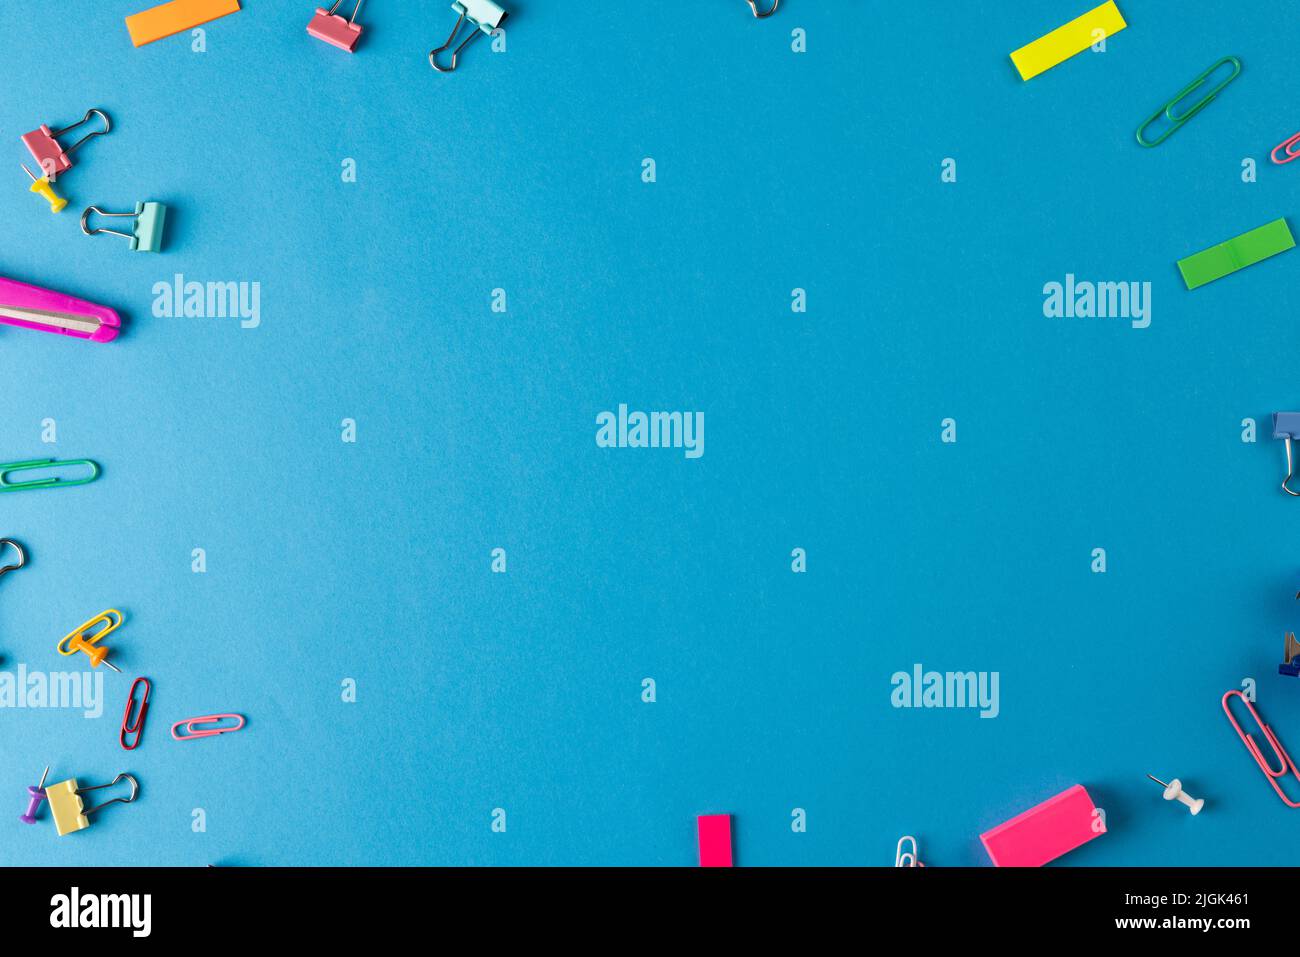 Immagine di vari materiali di consumo per ufficio, , graffette, spilli e foglio di carta bianco su sfondo blu Foto Stock